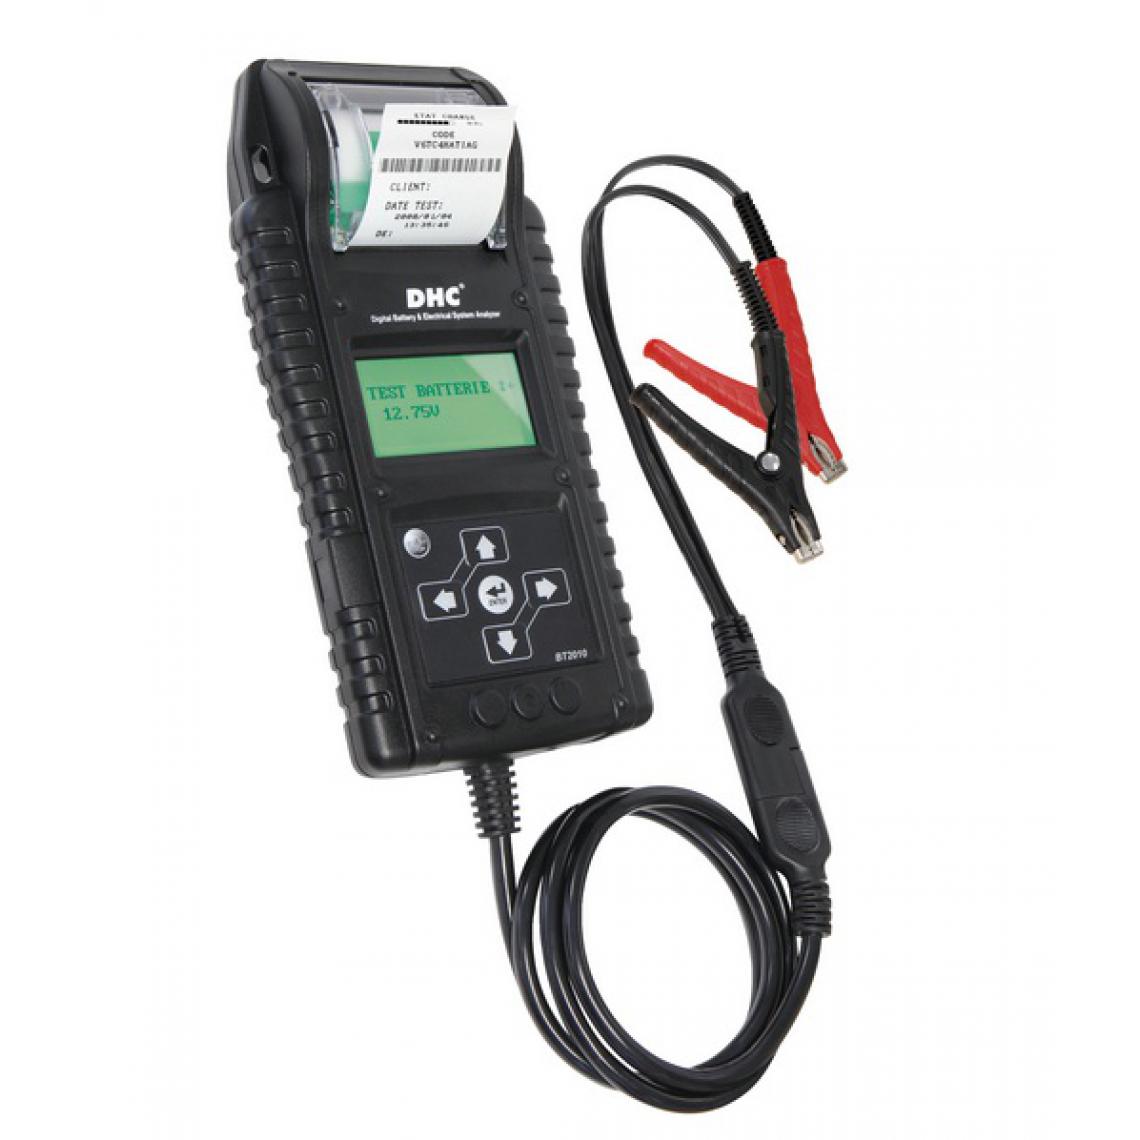 Gys - Gys - Testeur de batterie multifontions électronique avec imprimante - DHC BT 2010 - Consommables pour outillage motorisé